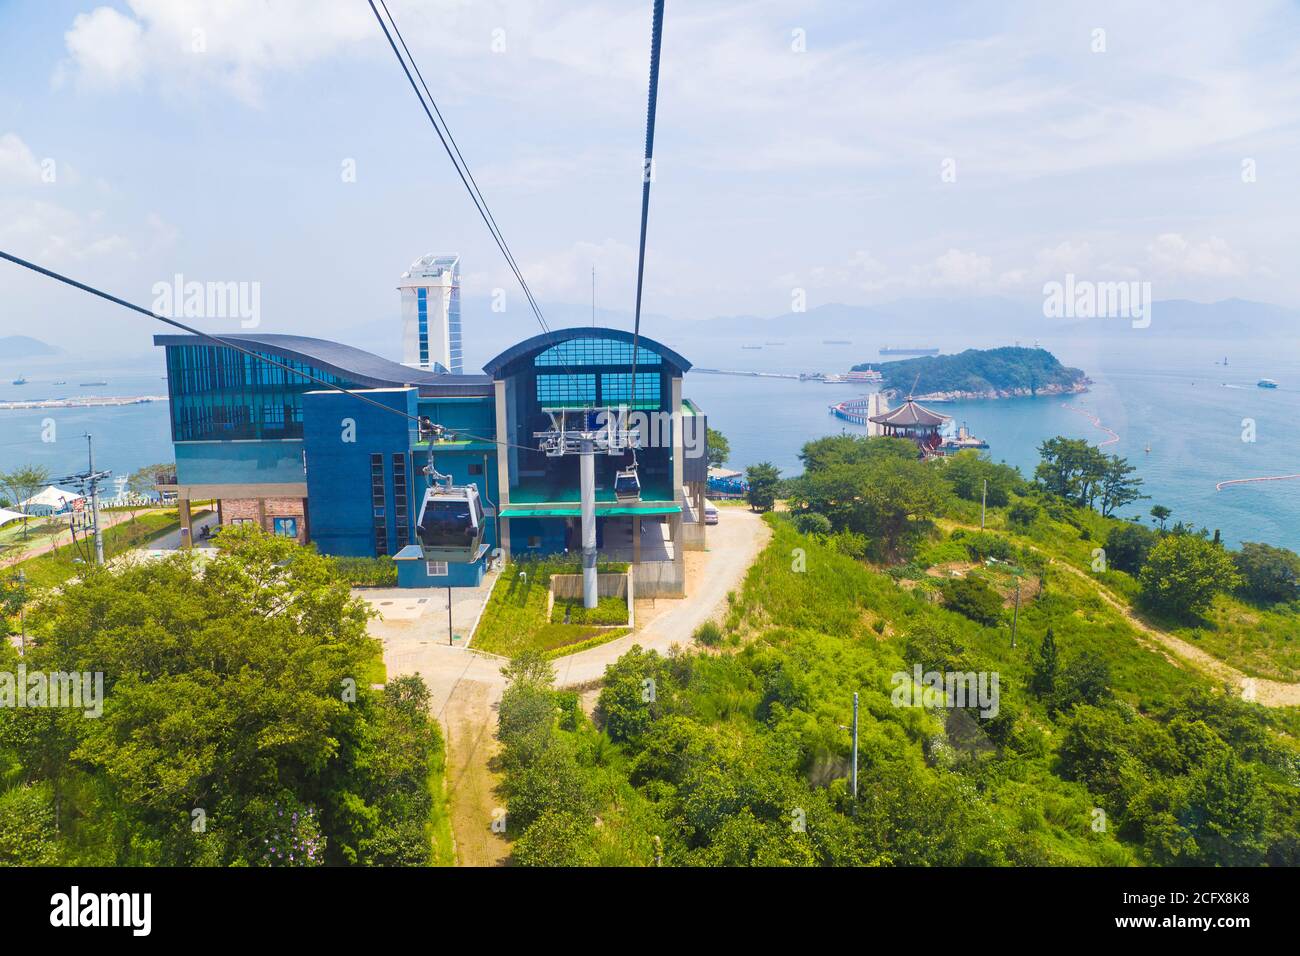 El teleférico marítimo de Yeosu es el primero de su clase en Corea, conectando la isla de Dolsan con el continente sobre el océano. Foto de stock